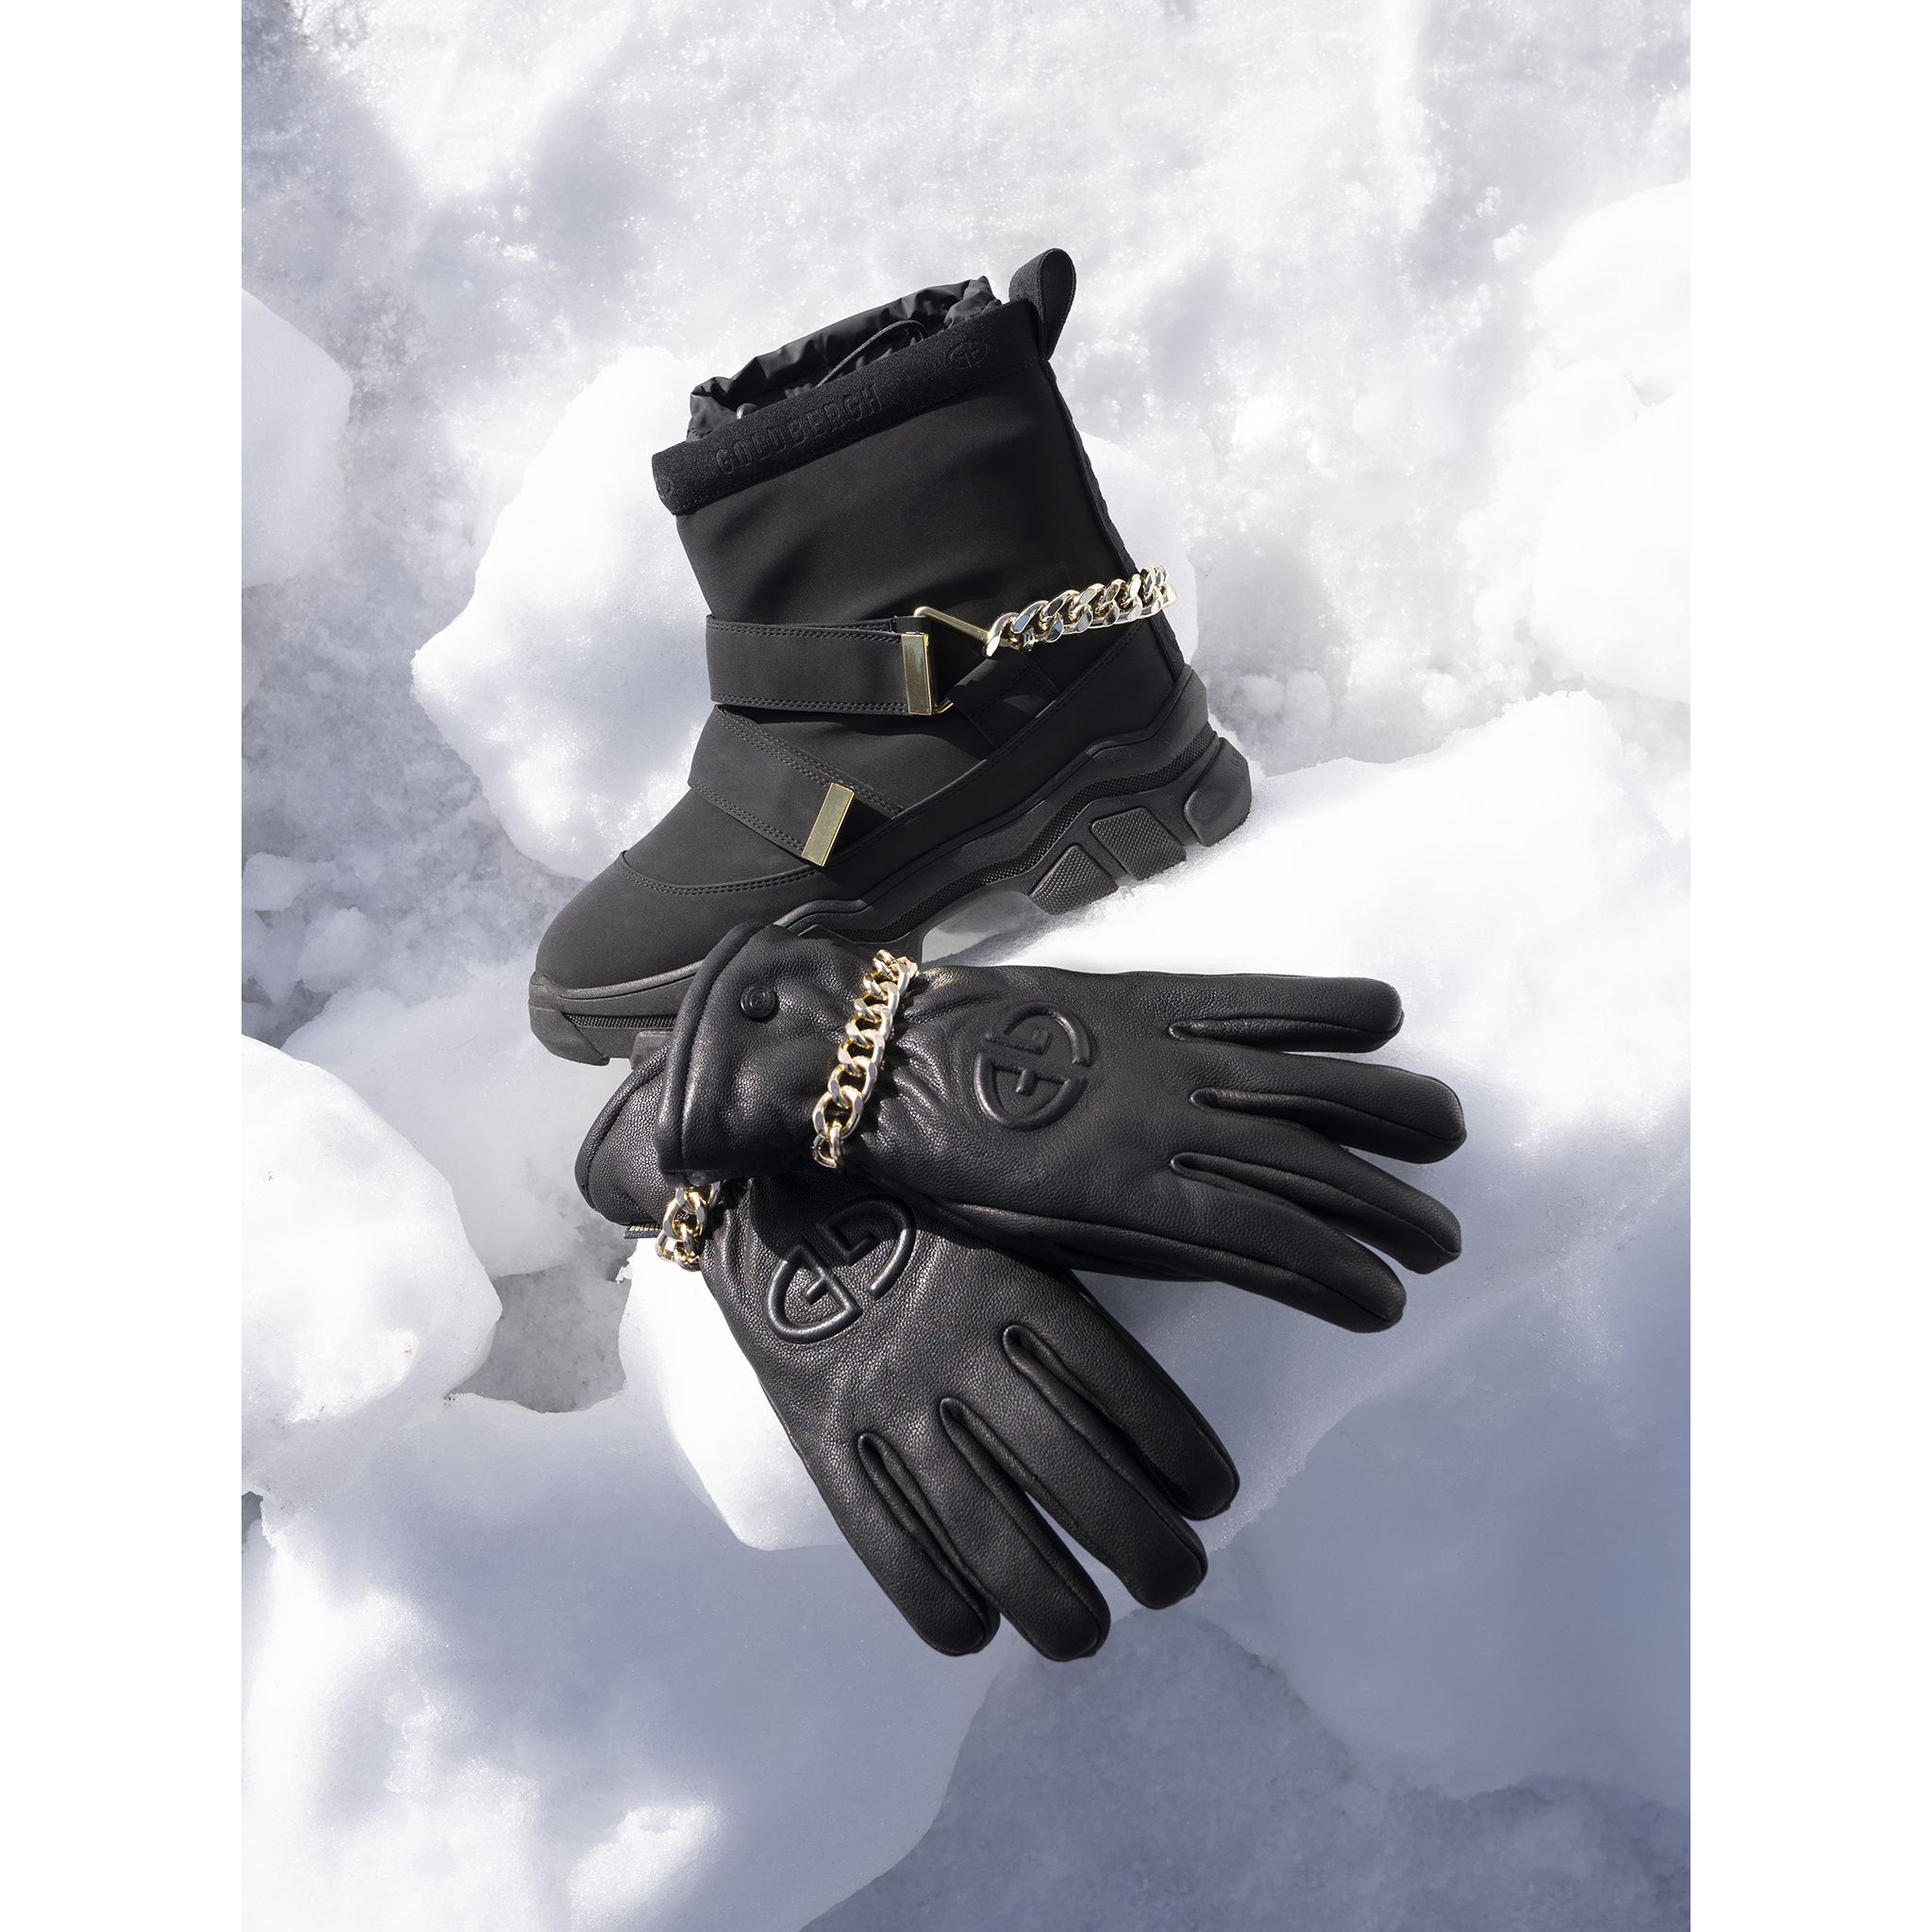 Goldbergh Ski & | Mănuși KYLIE Snow Îmbrăcăminte | Gloves